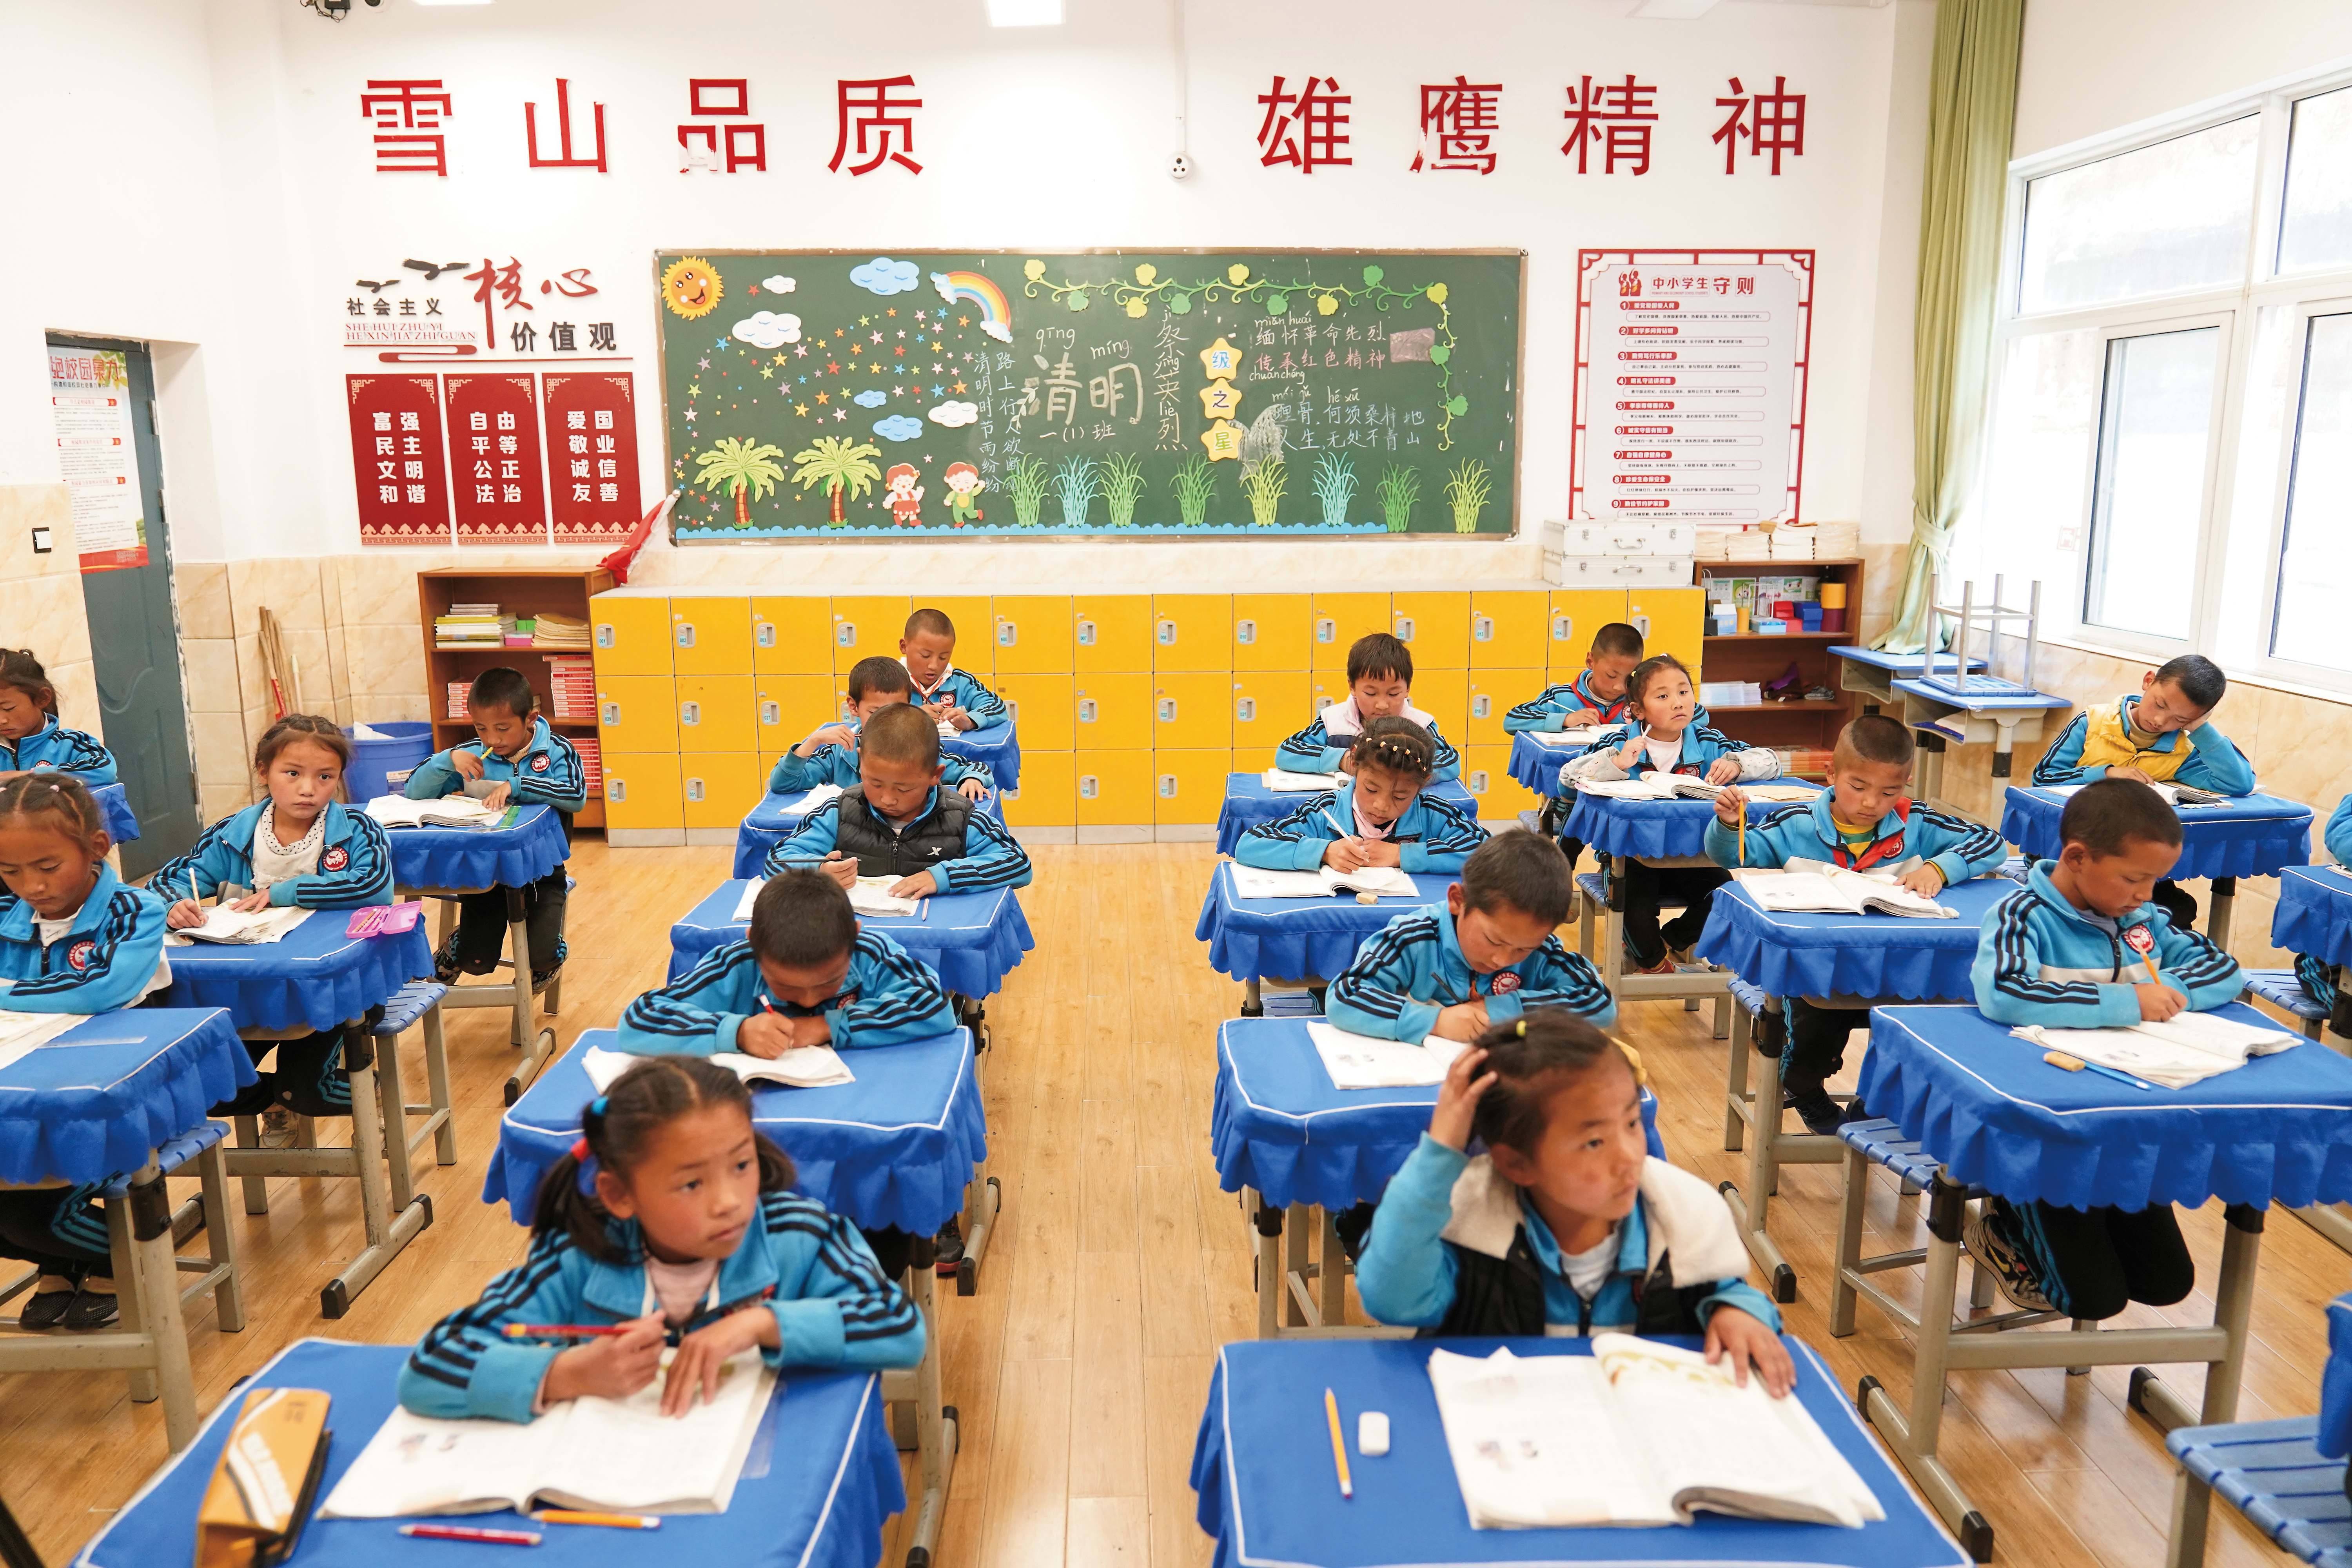 香格里拉市东旺乡小学各族儿童在宽敞明亮的教室里学习 洛桑央宗 摄.jpg